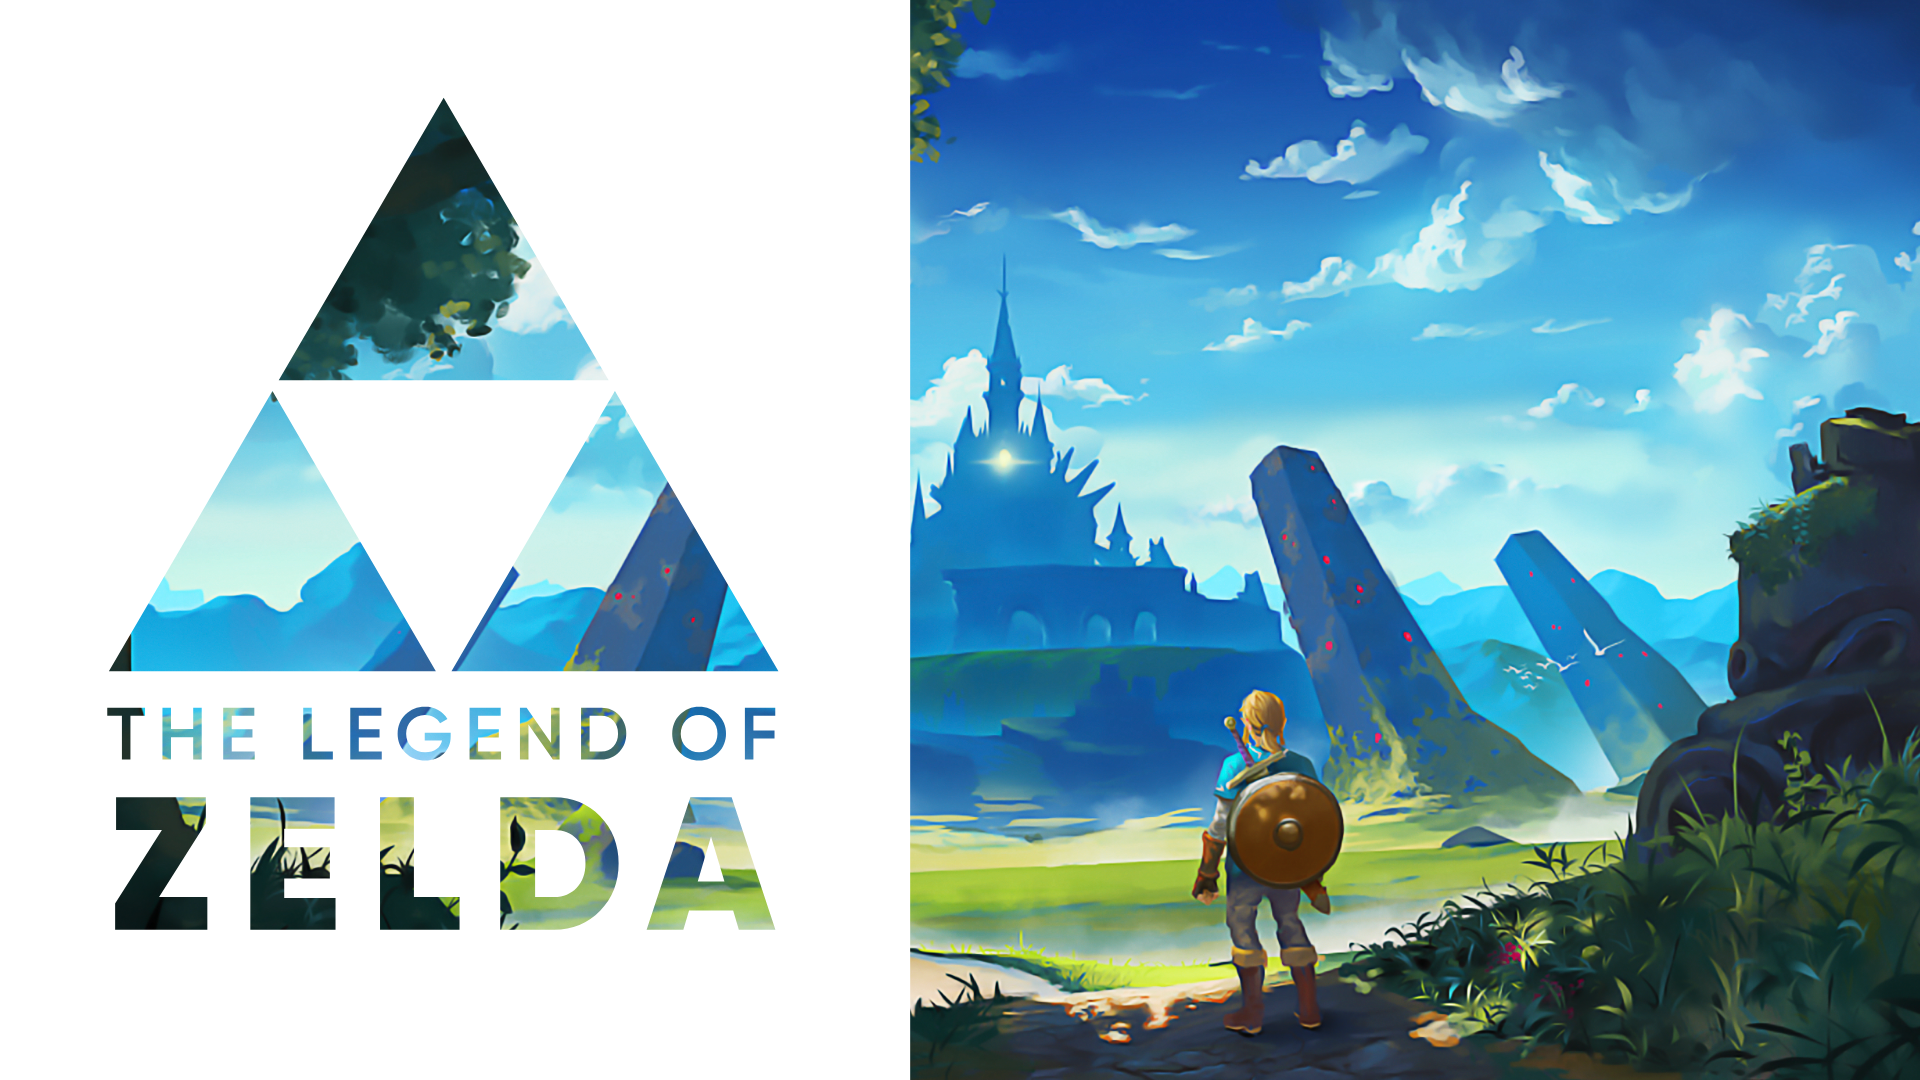 General 1920x1080 Link The Legend of Zelda The Legend of Zelda: Breath of the Wild video games Nintendo video game characters